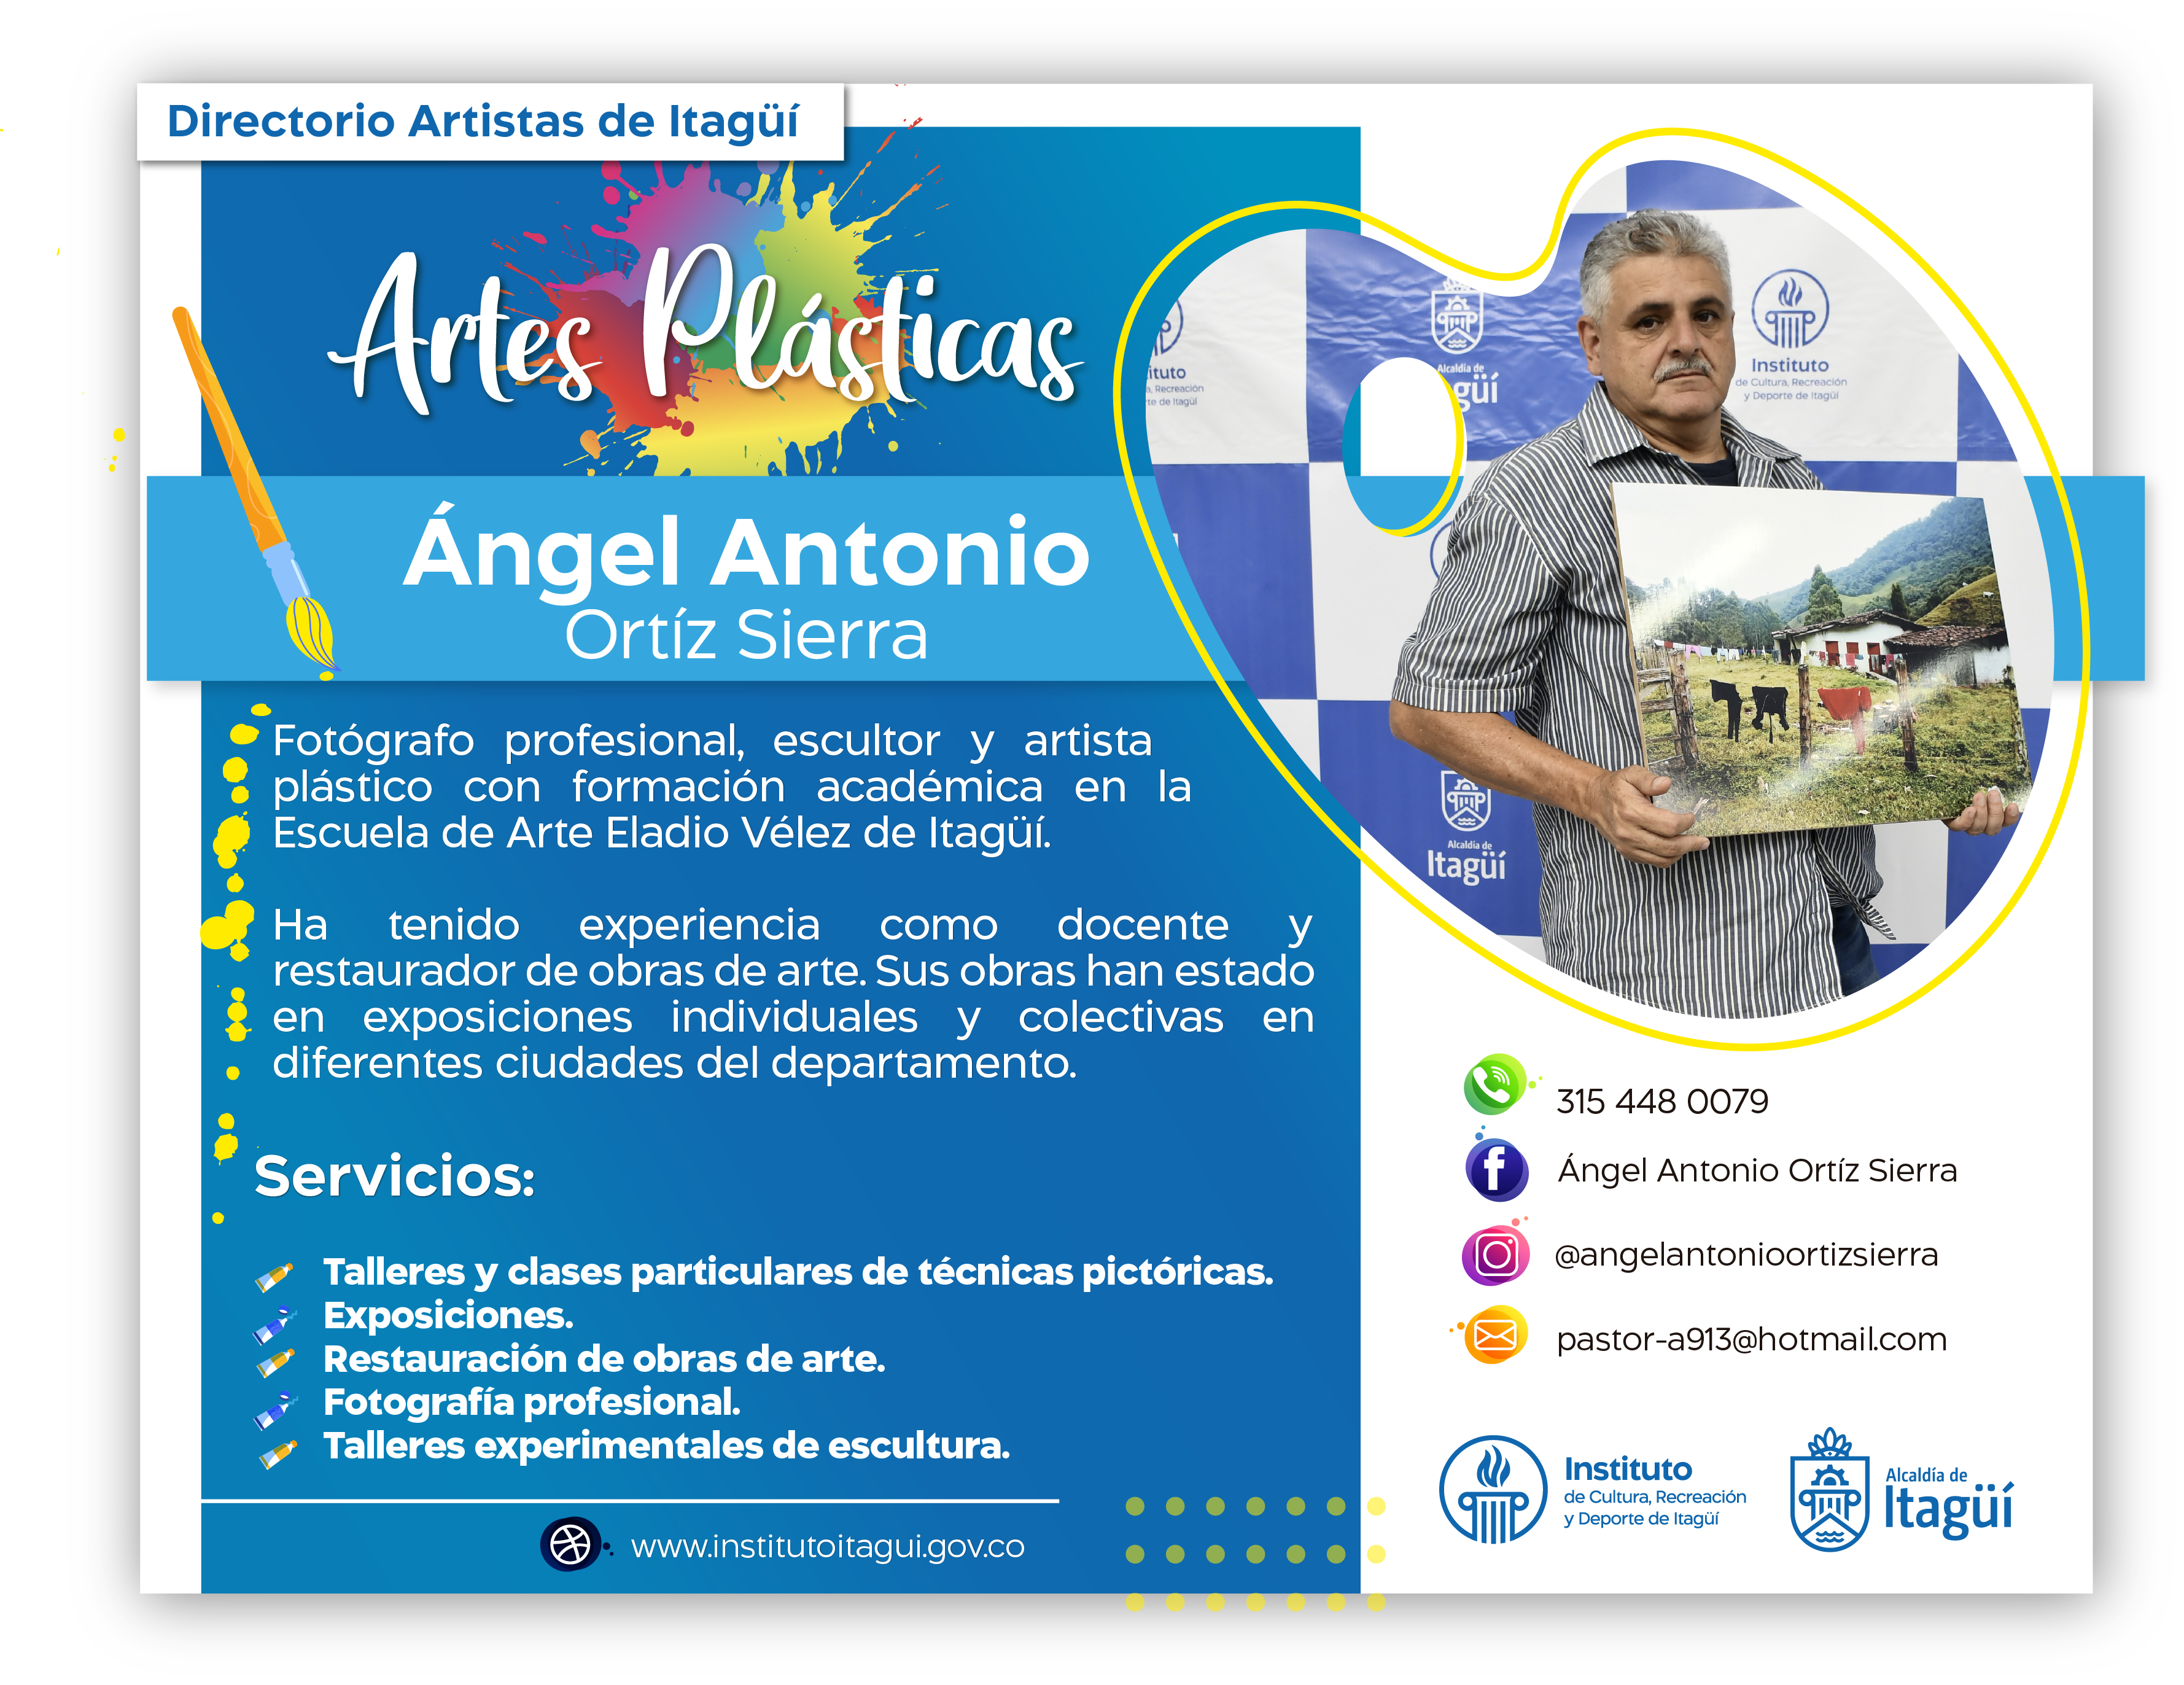 Angel Antonio Ortiz